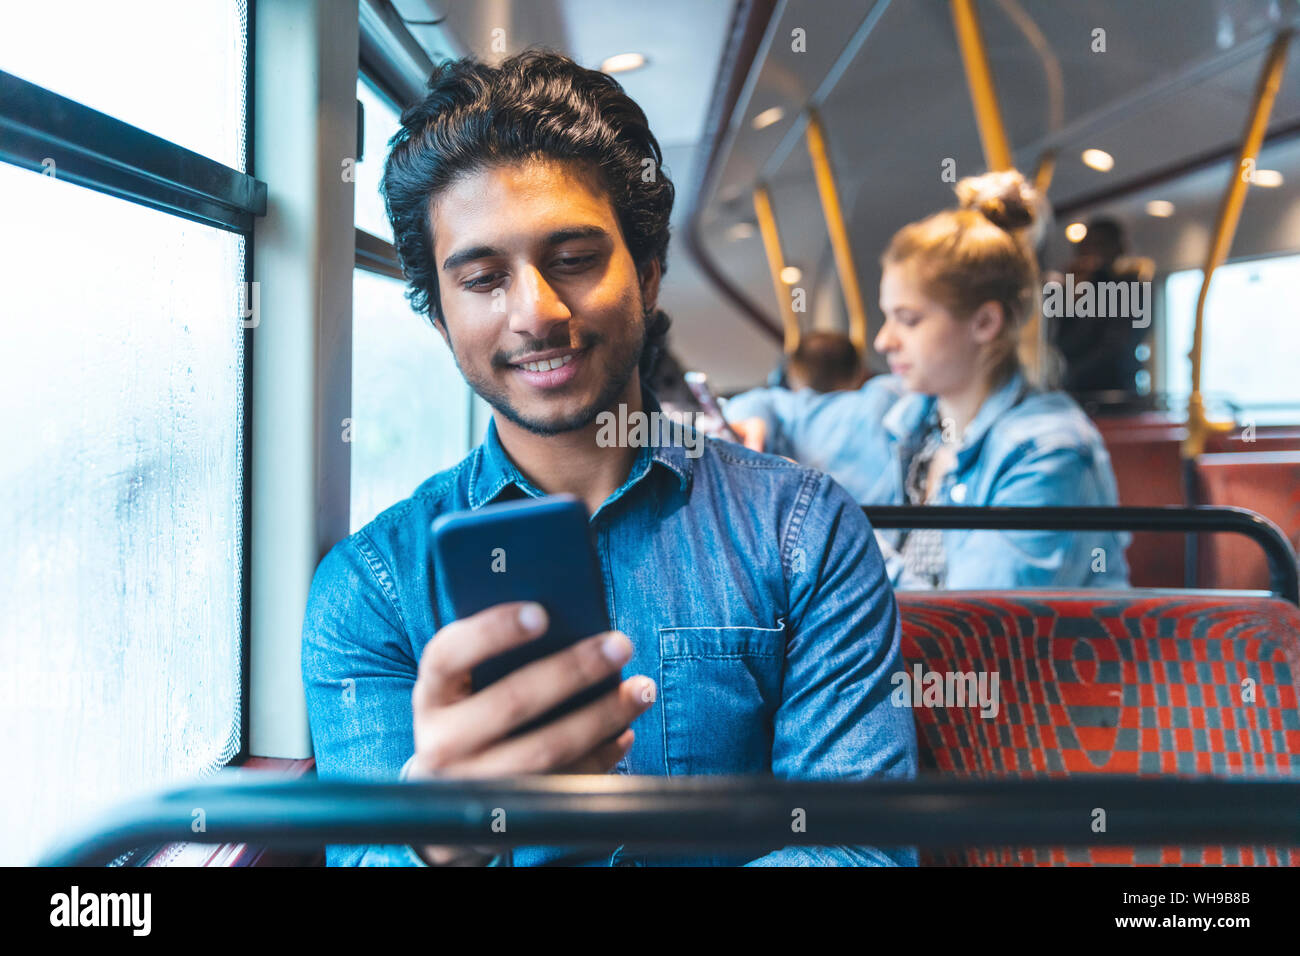 Ritratto di giovane uomo che viaggia in autobus guardando al telefono cellulare, London, Regno Unito Foto Stock